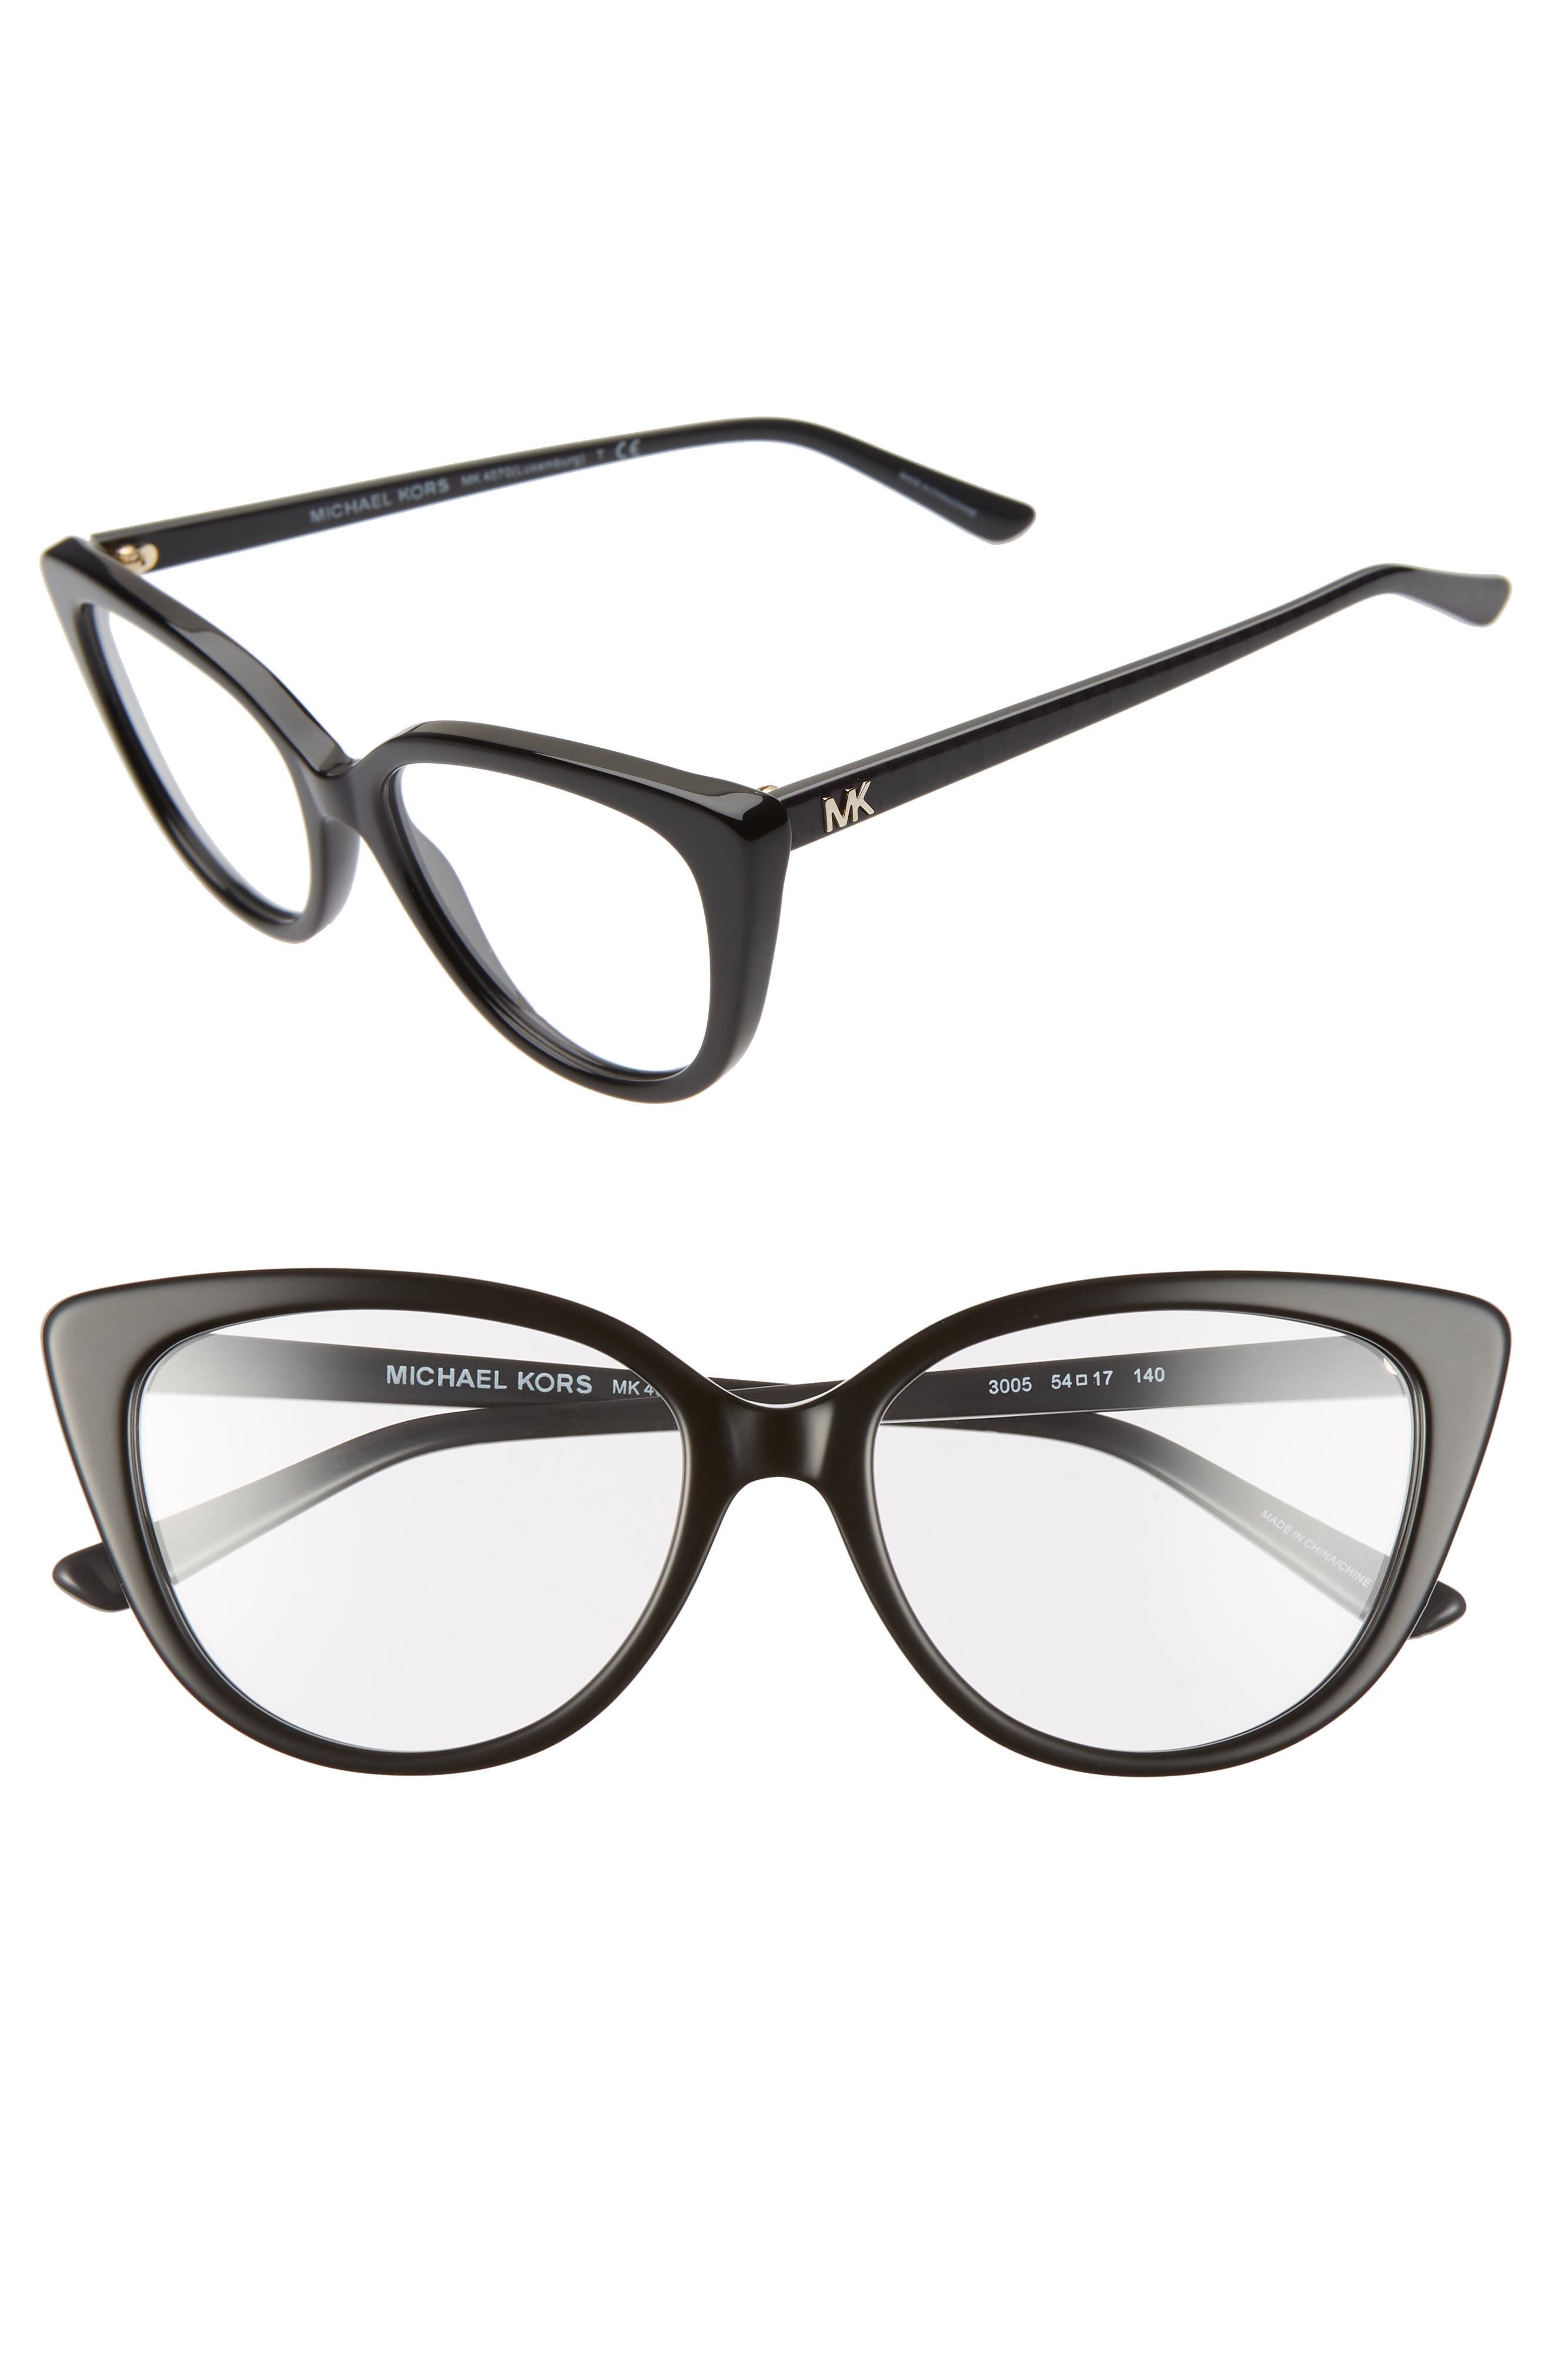 michael kors cat eye glasses